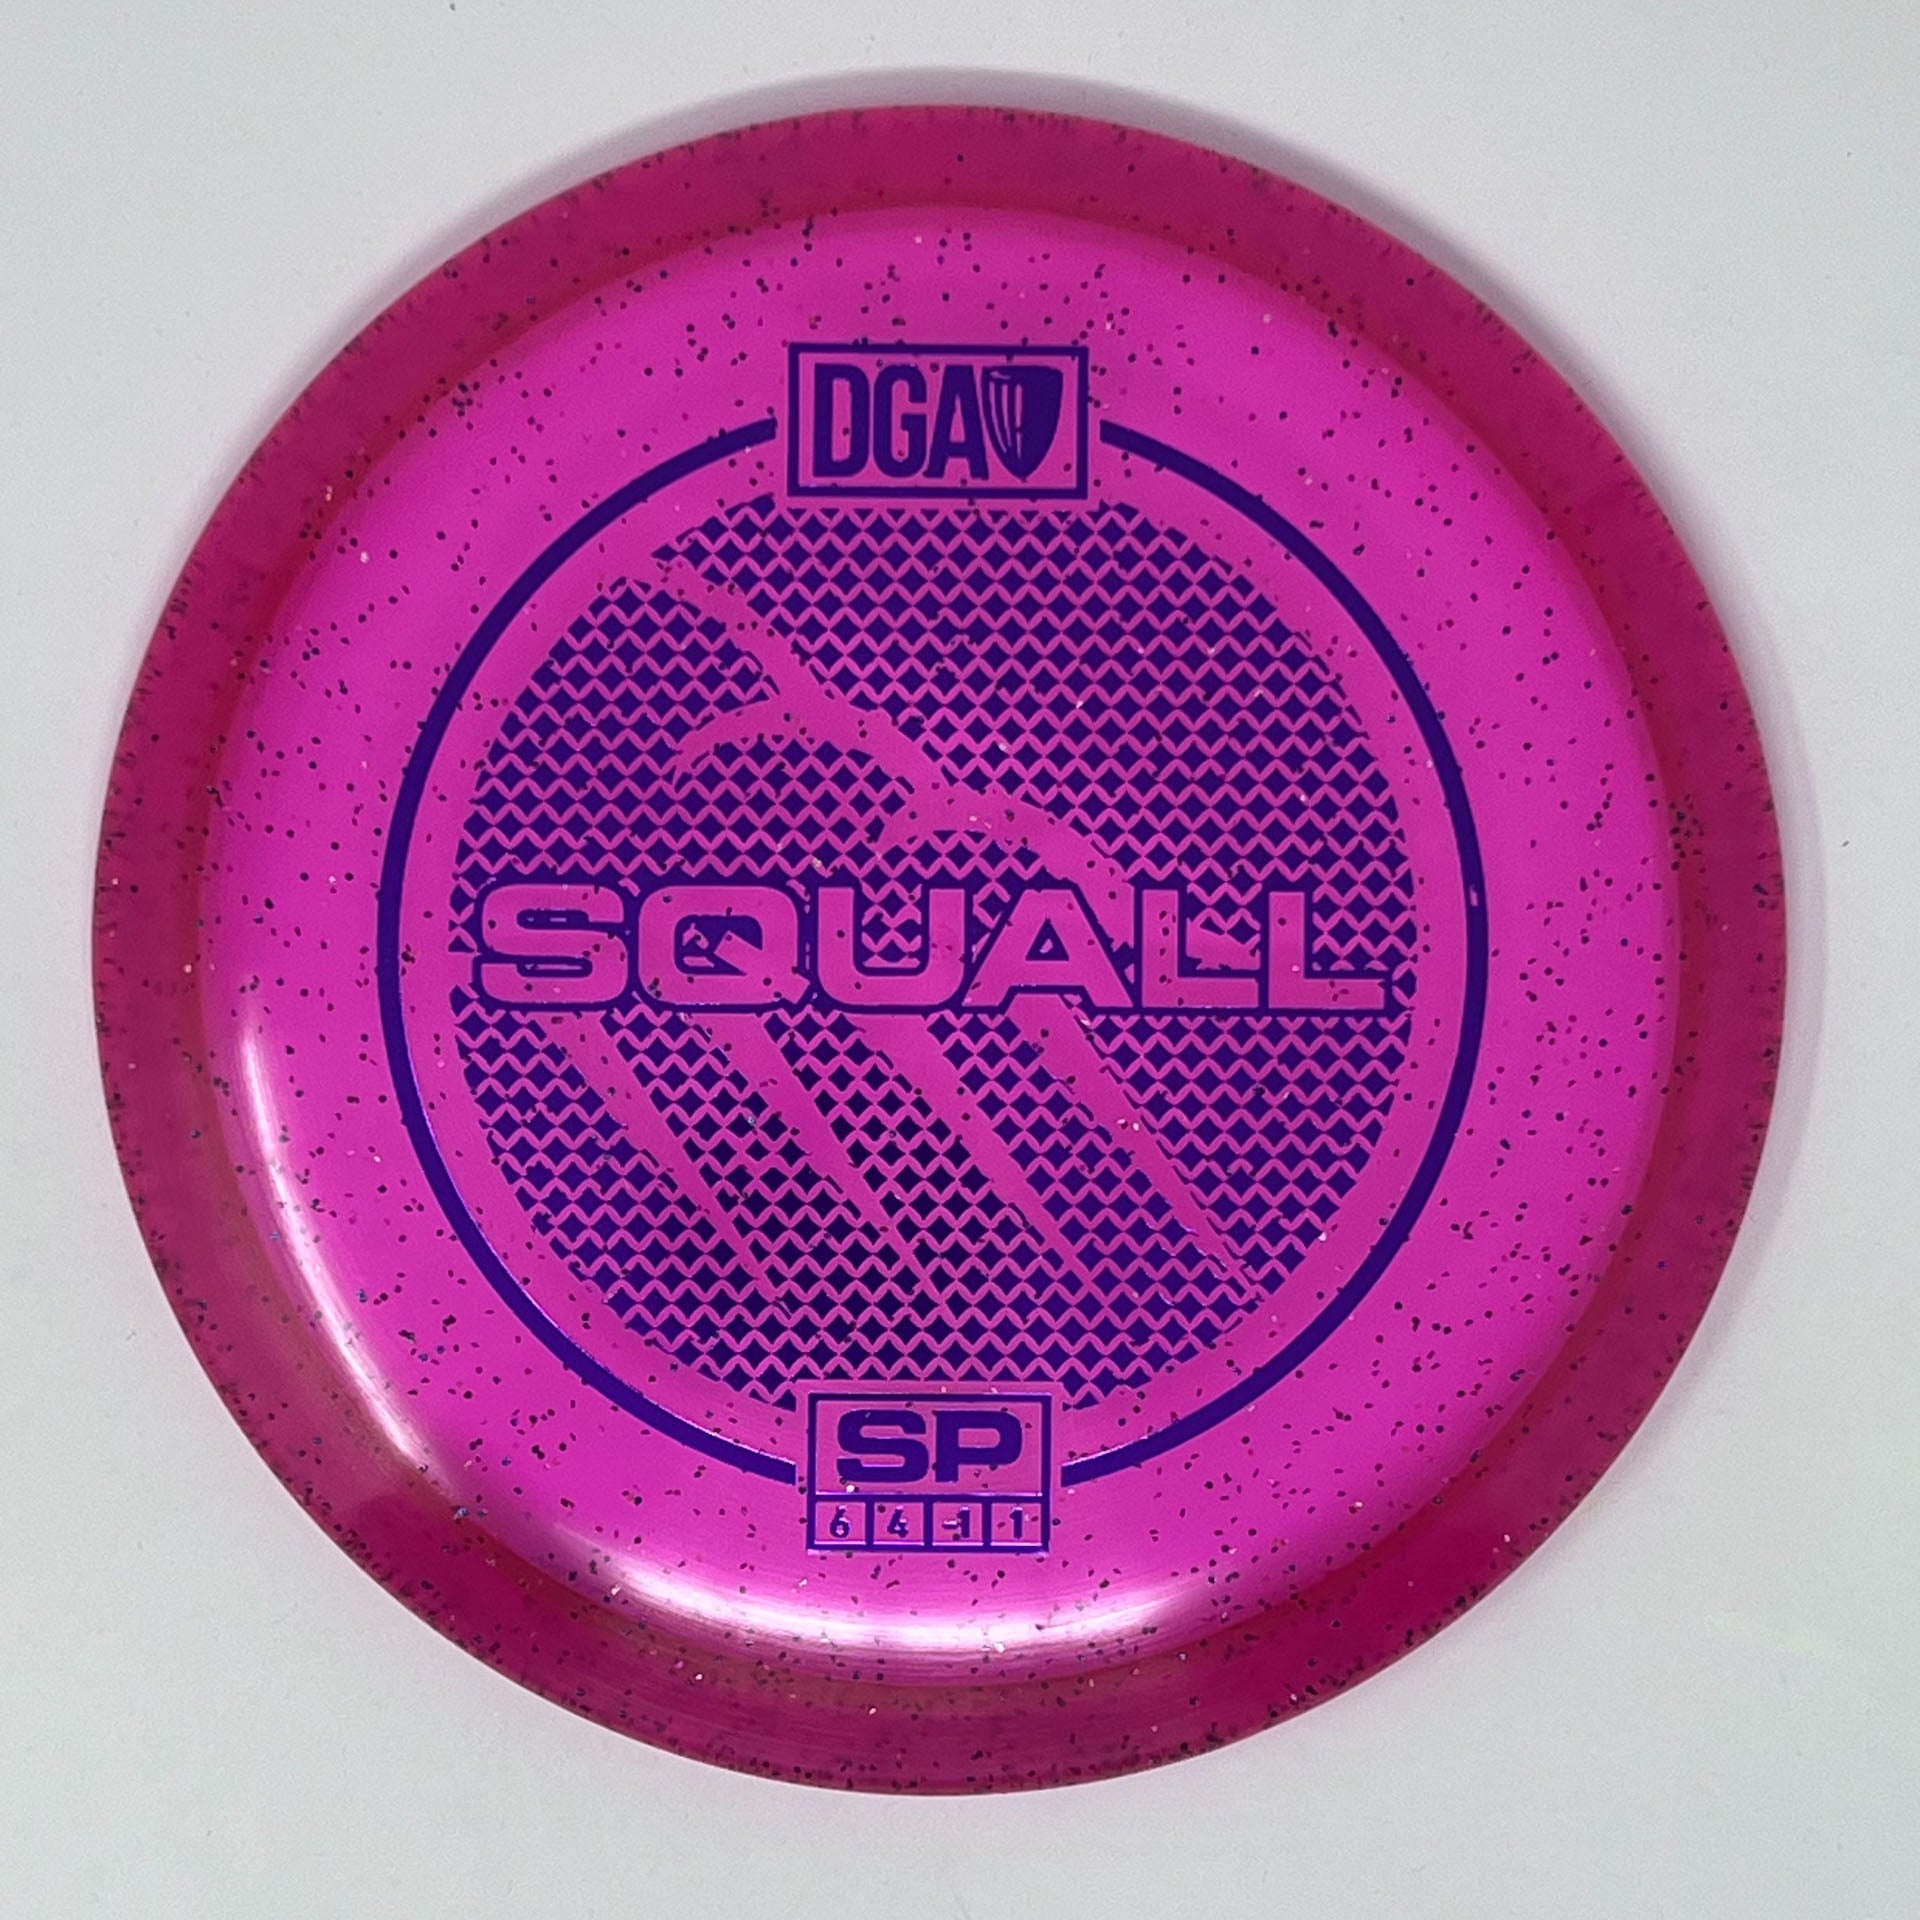 DGA SP Line Squall